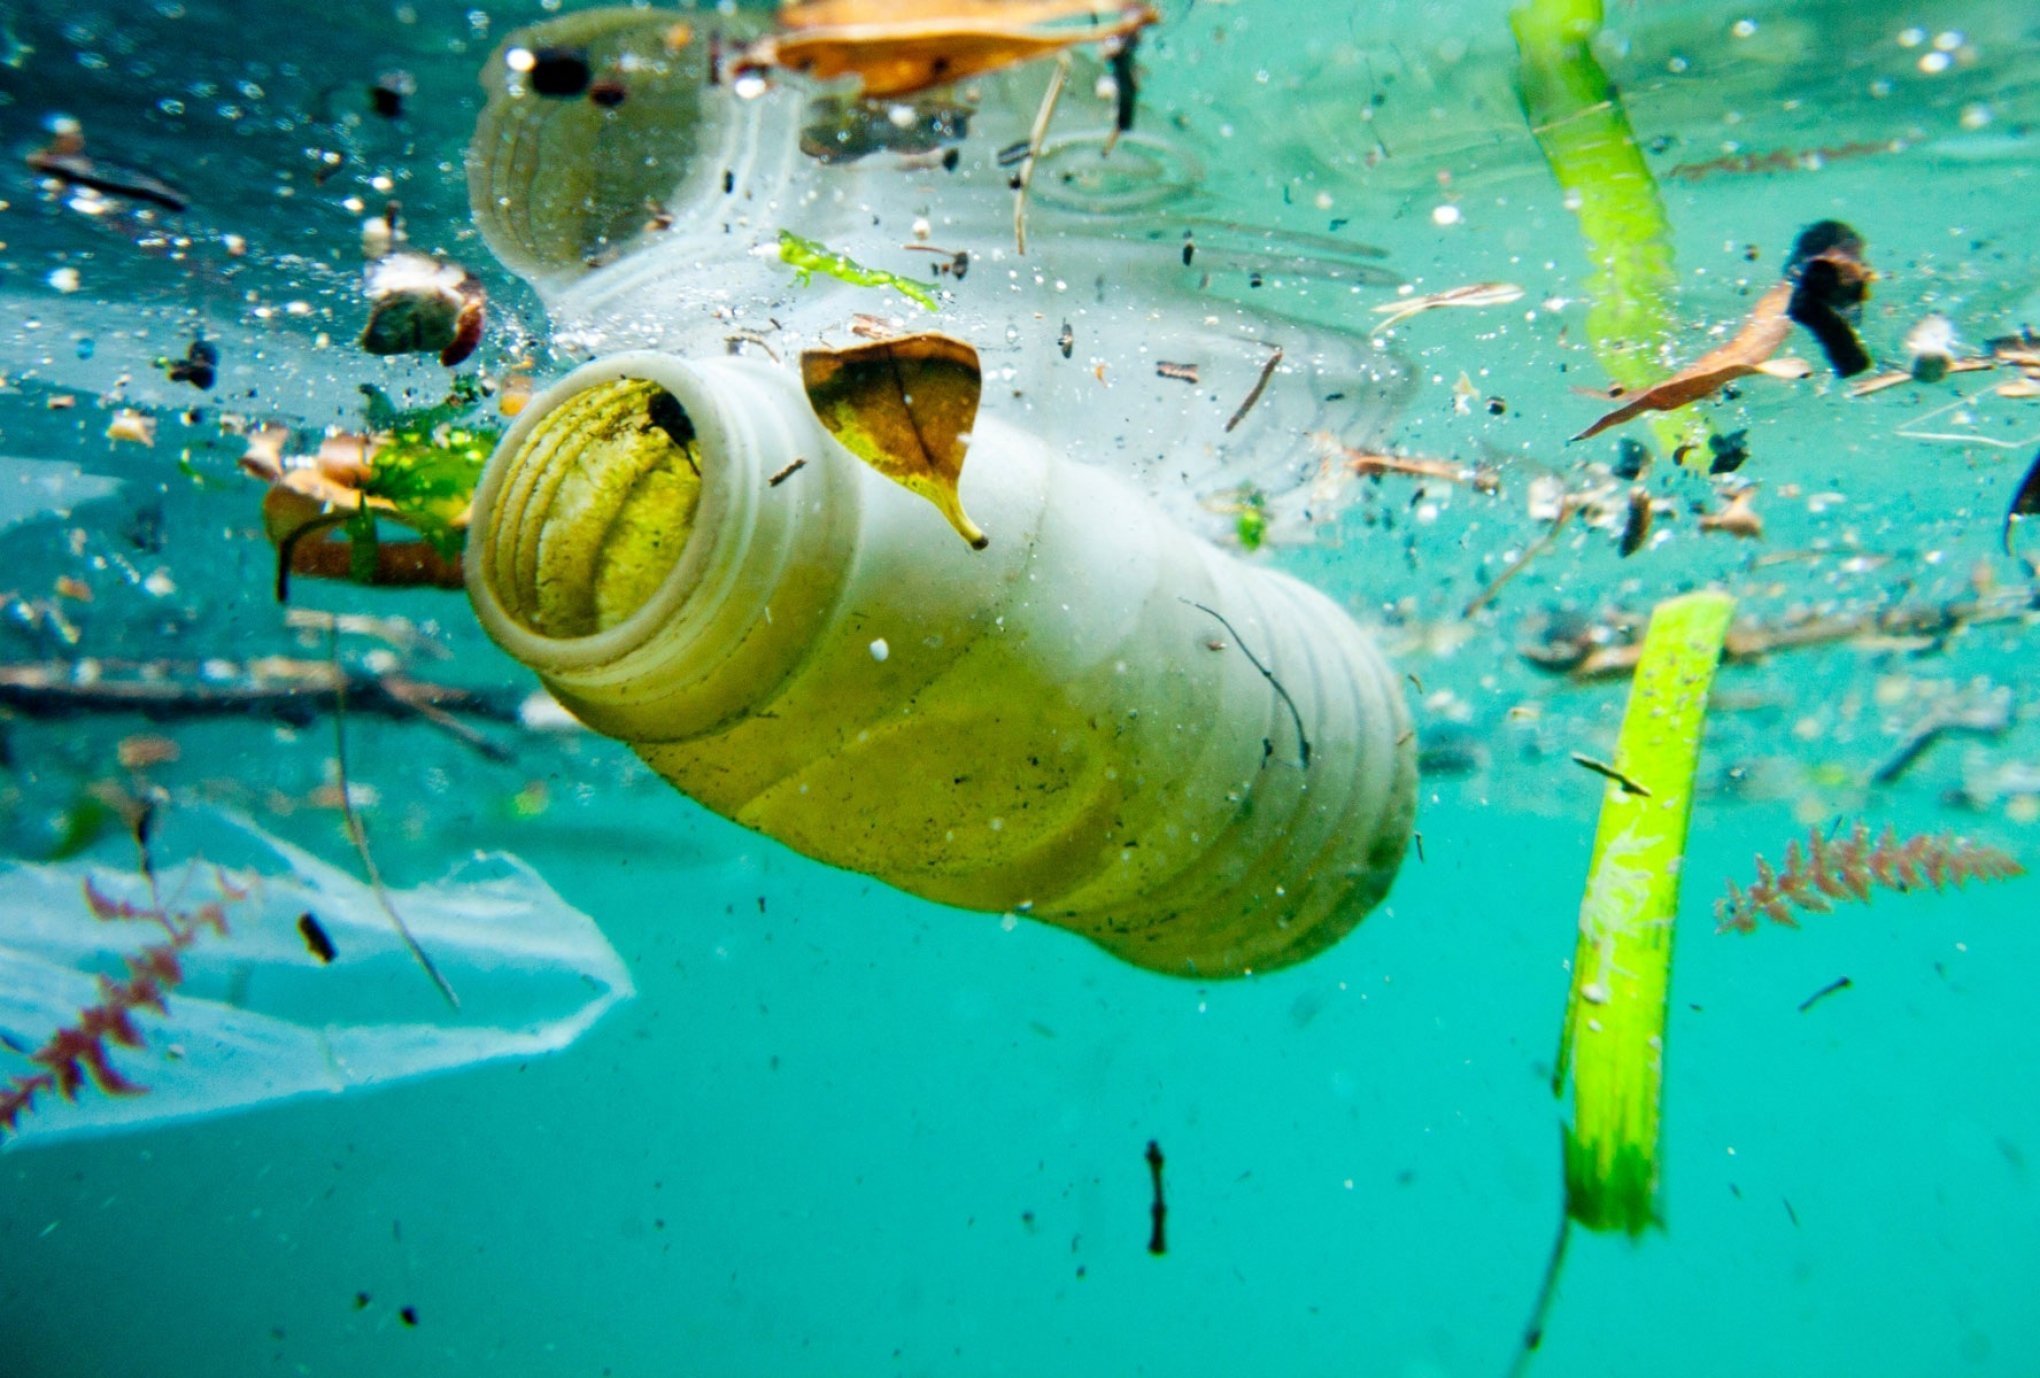 Estudo revela que quantidade de plástico nos oceanos pode aumentar quatro vezes até 2040